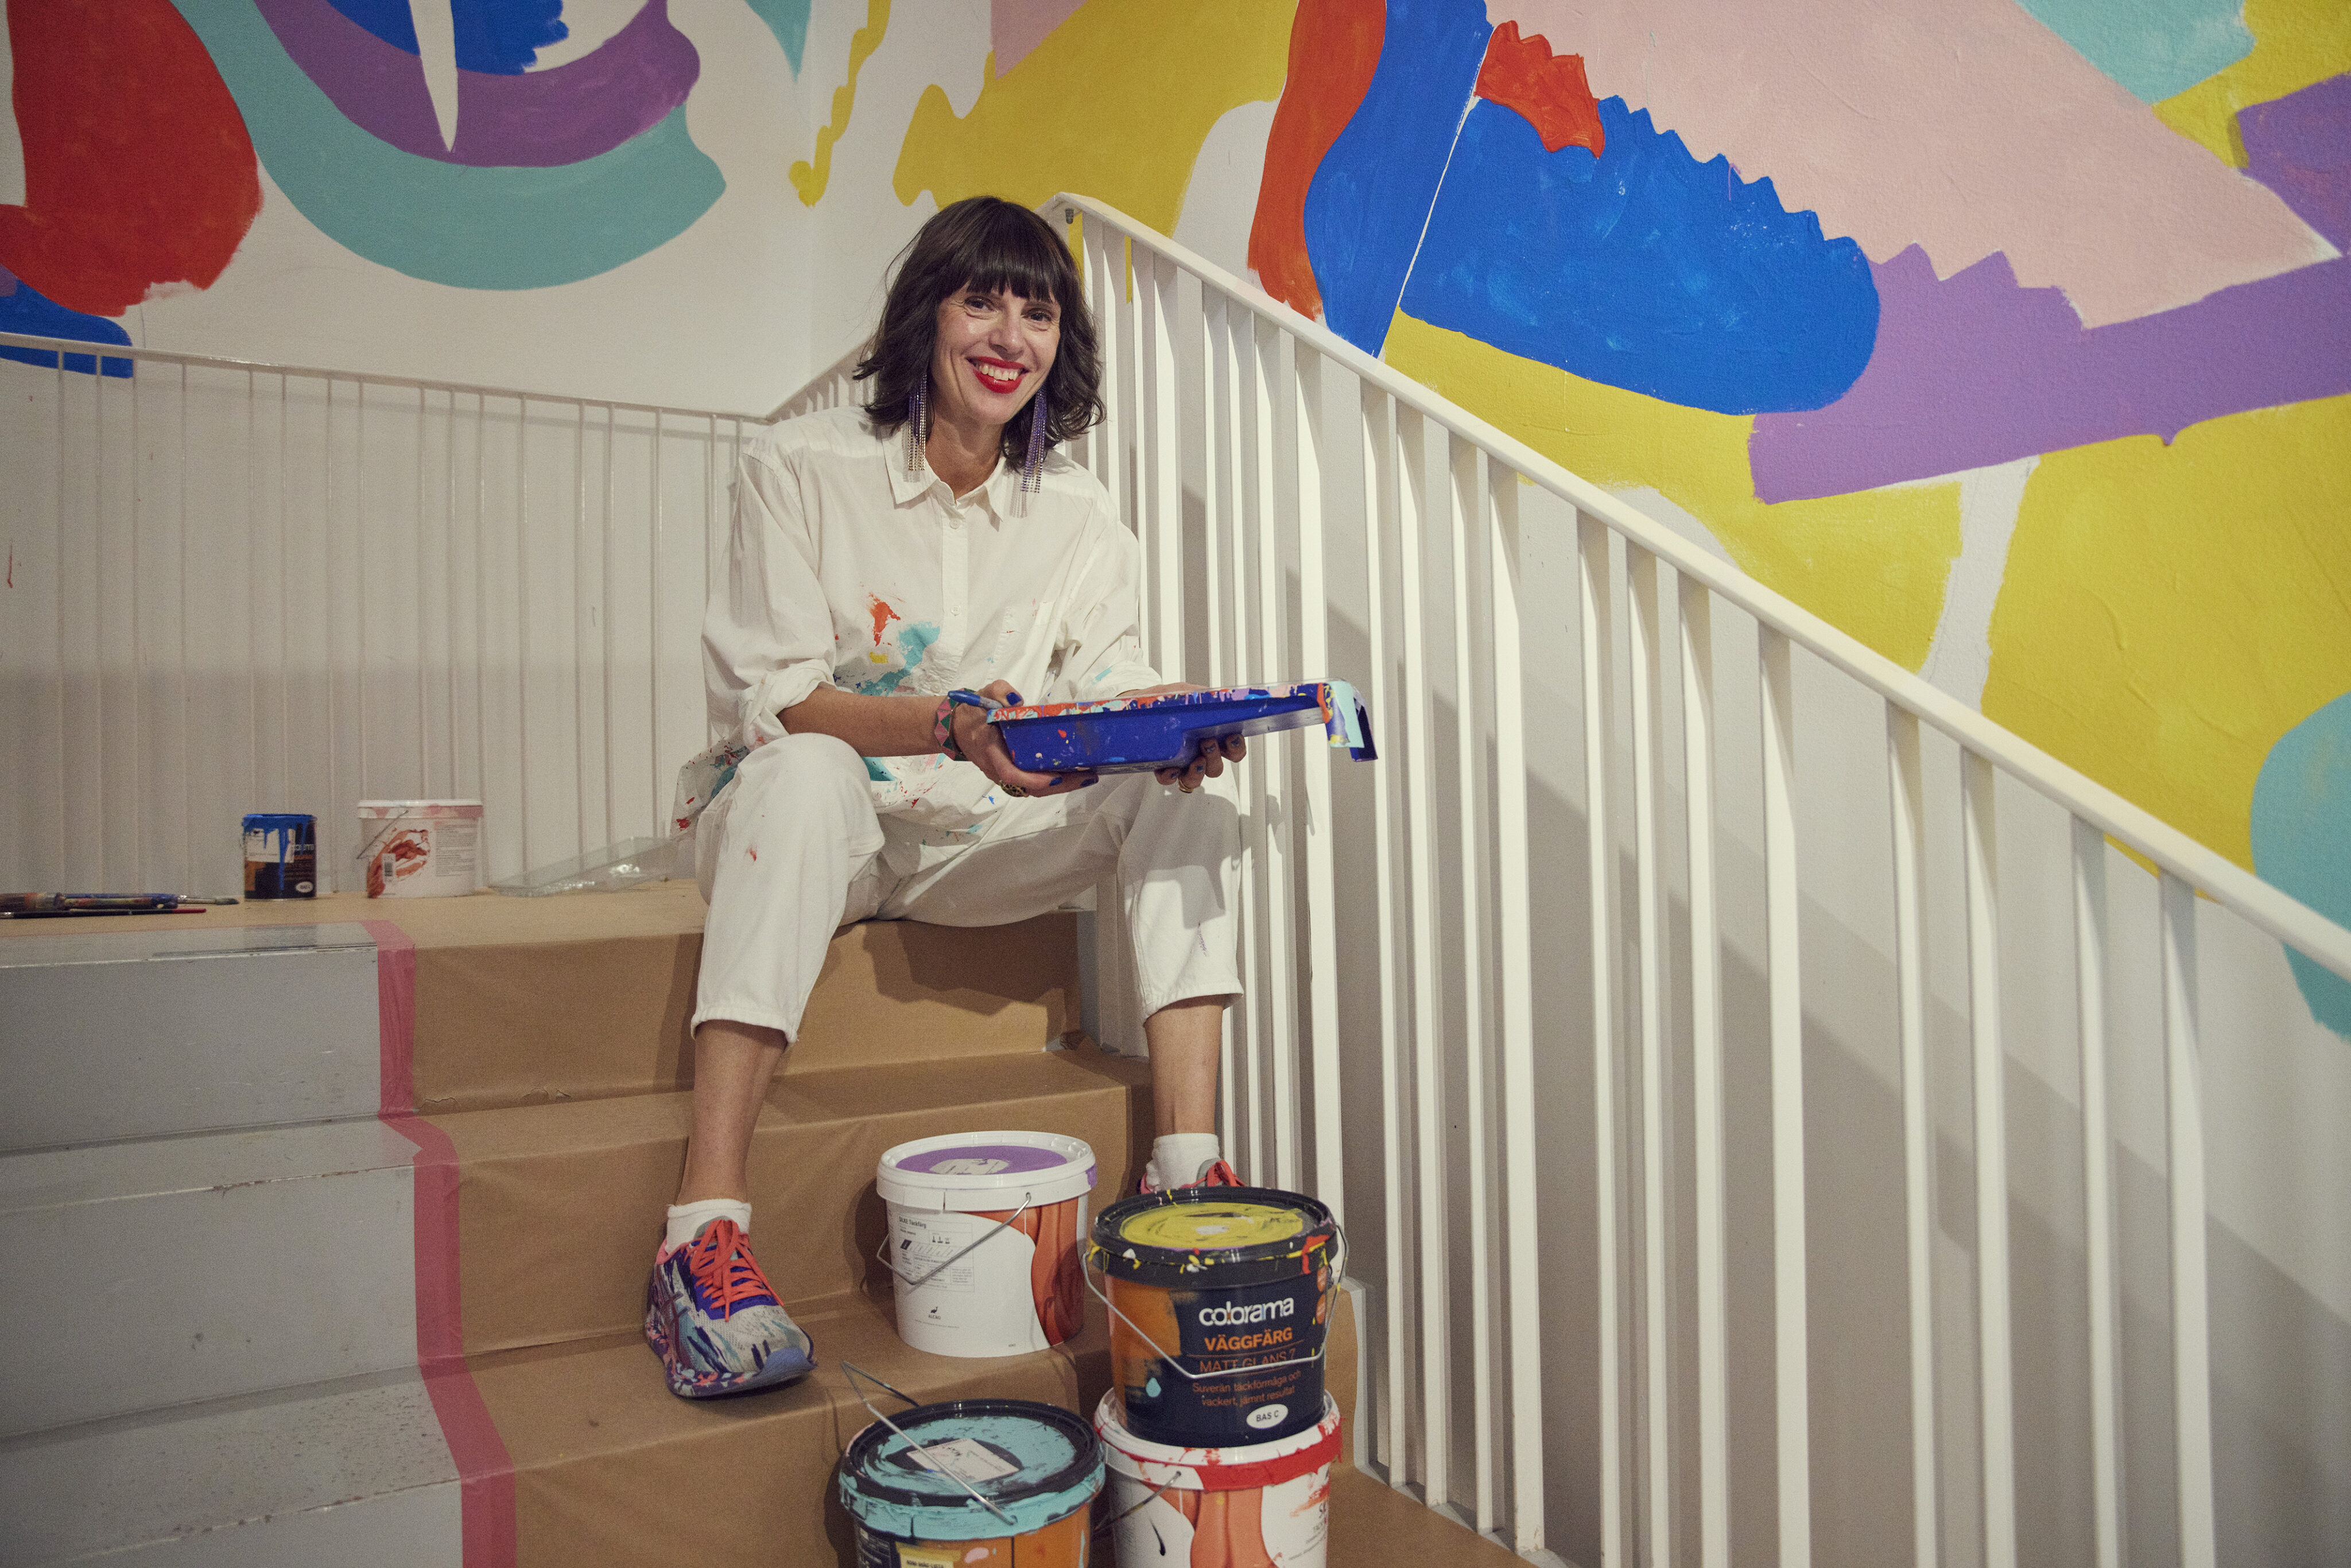 Kvinna sitter i trappa med målarfärger runt sig